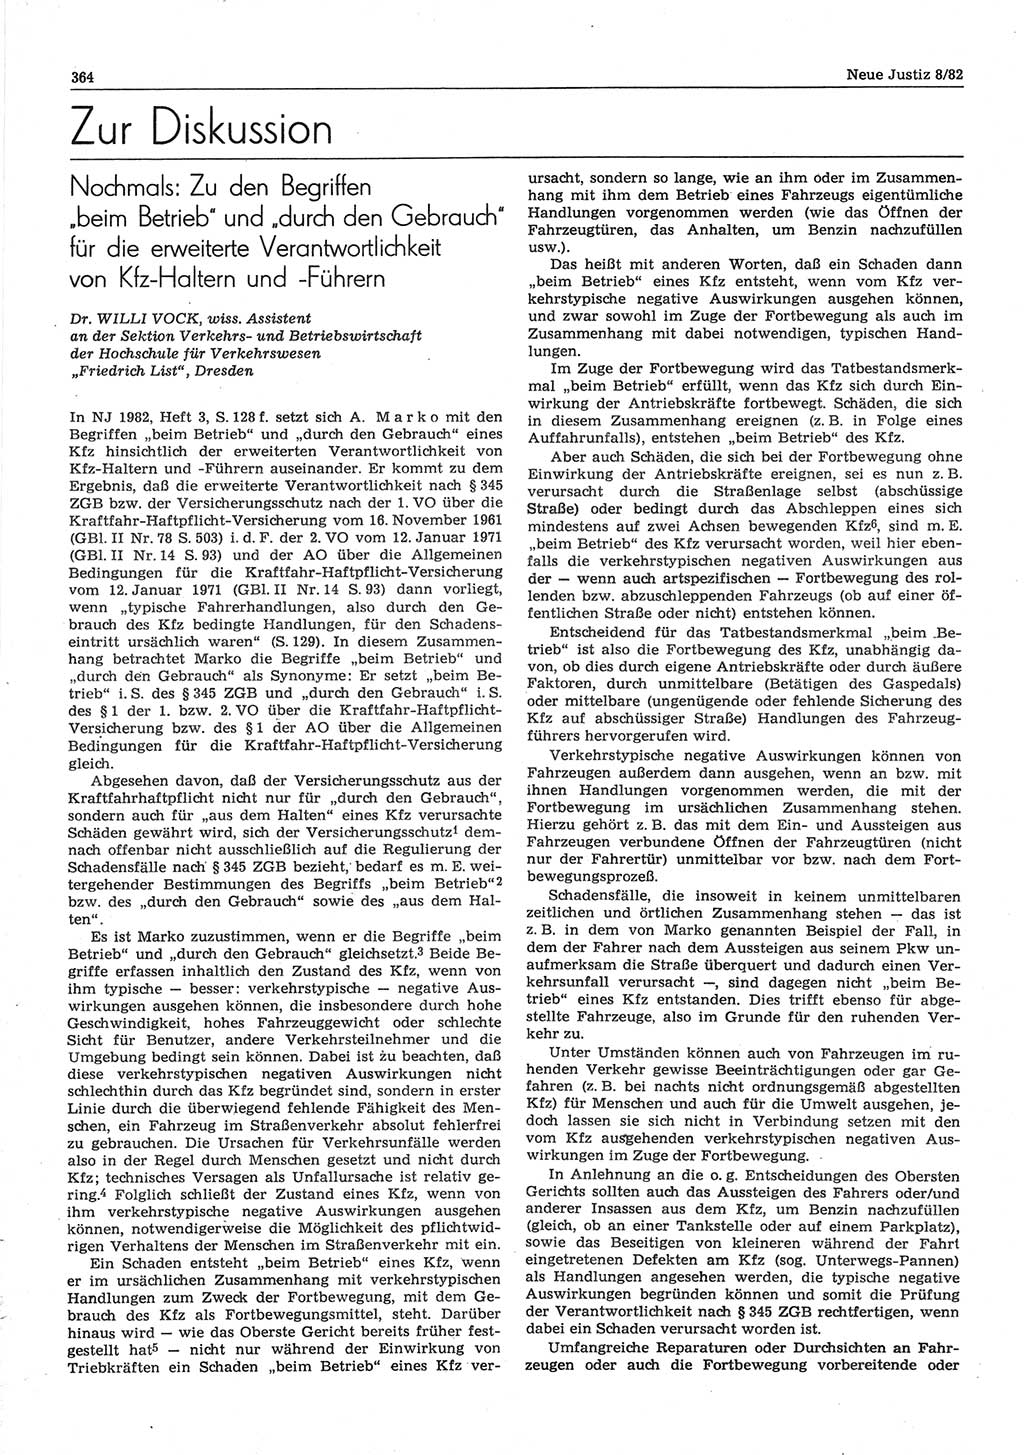 Neue Justiz (NJ), Zeitschrift für sozialistisches Recht und Gesetzlichkeit [Deutsche Demokratische Republik (DDR)], 36. Jahrgang 1982, Seite 364 (NJ DDR 1982, S. 364)